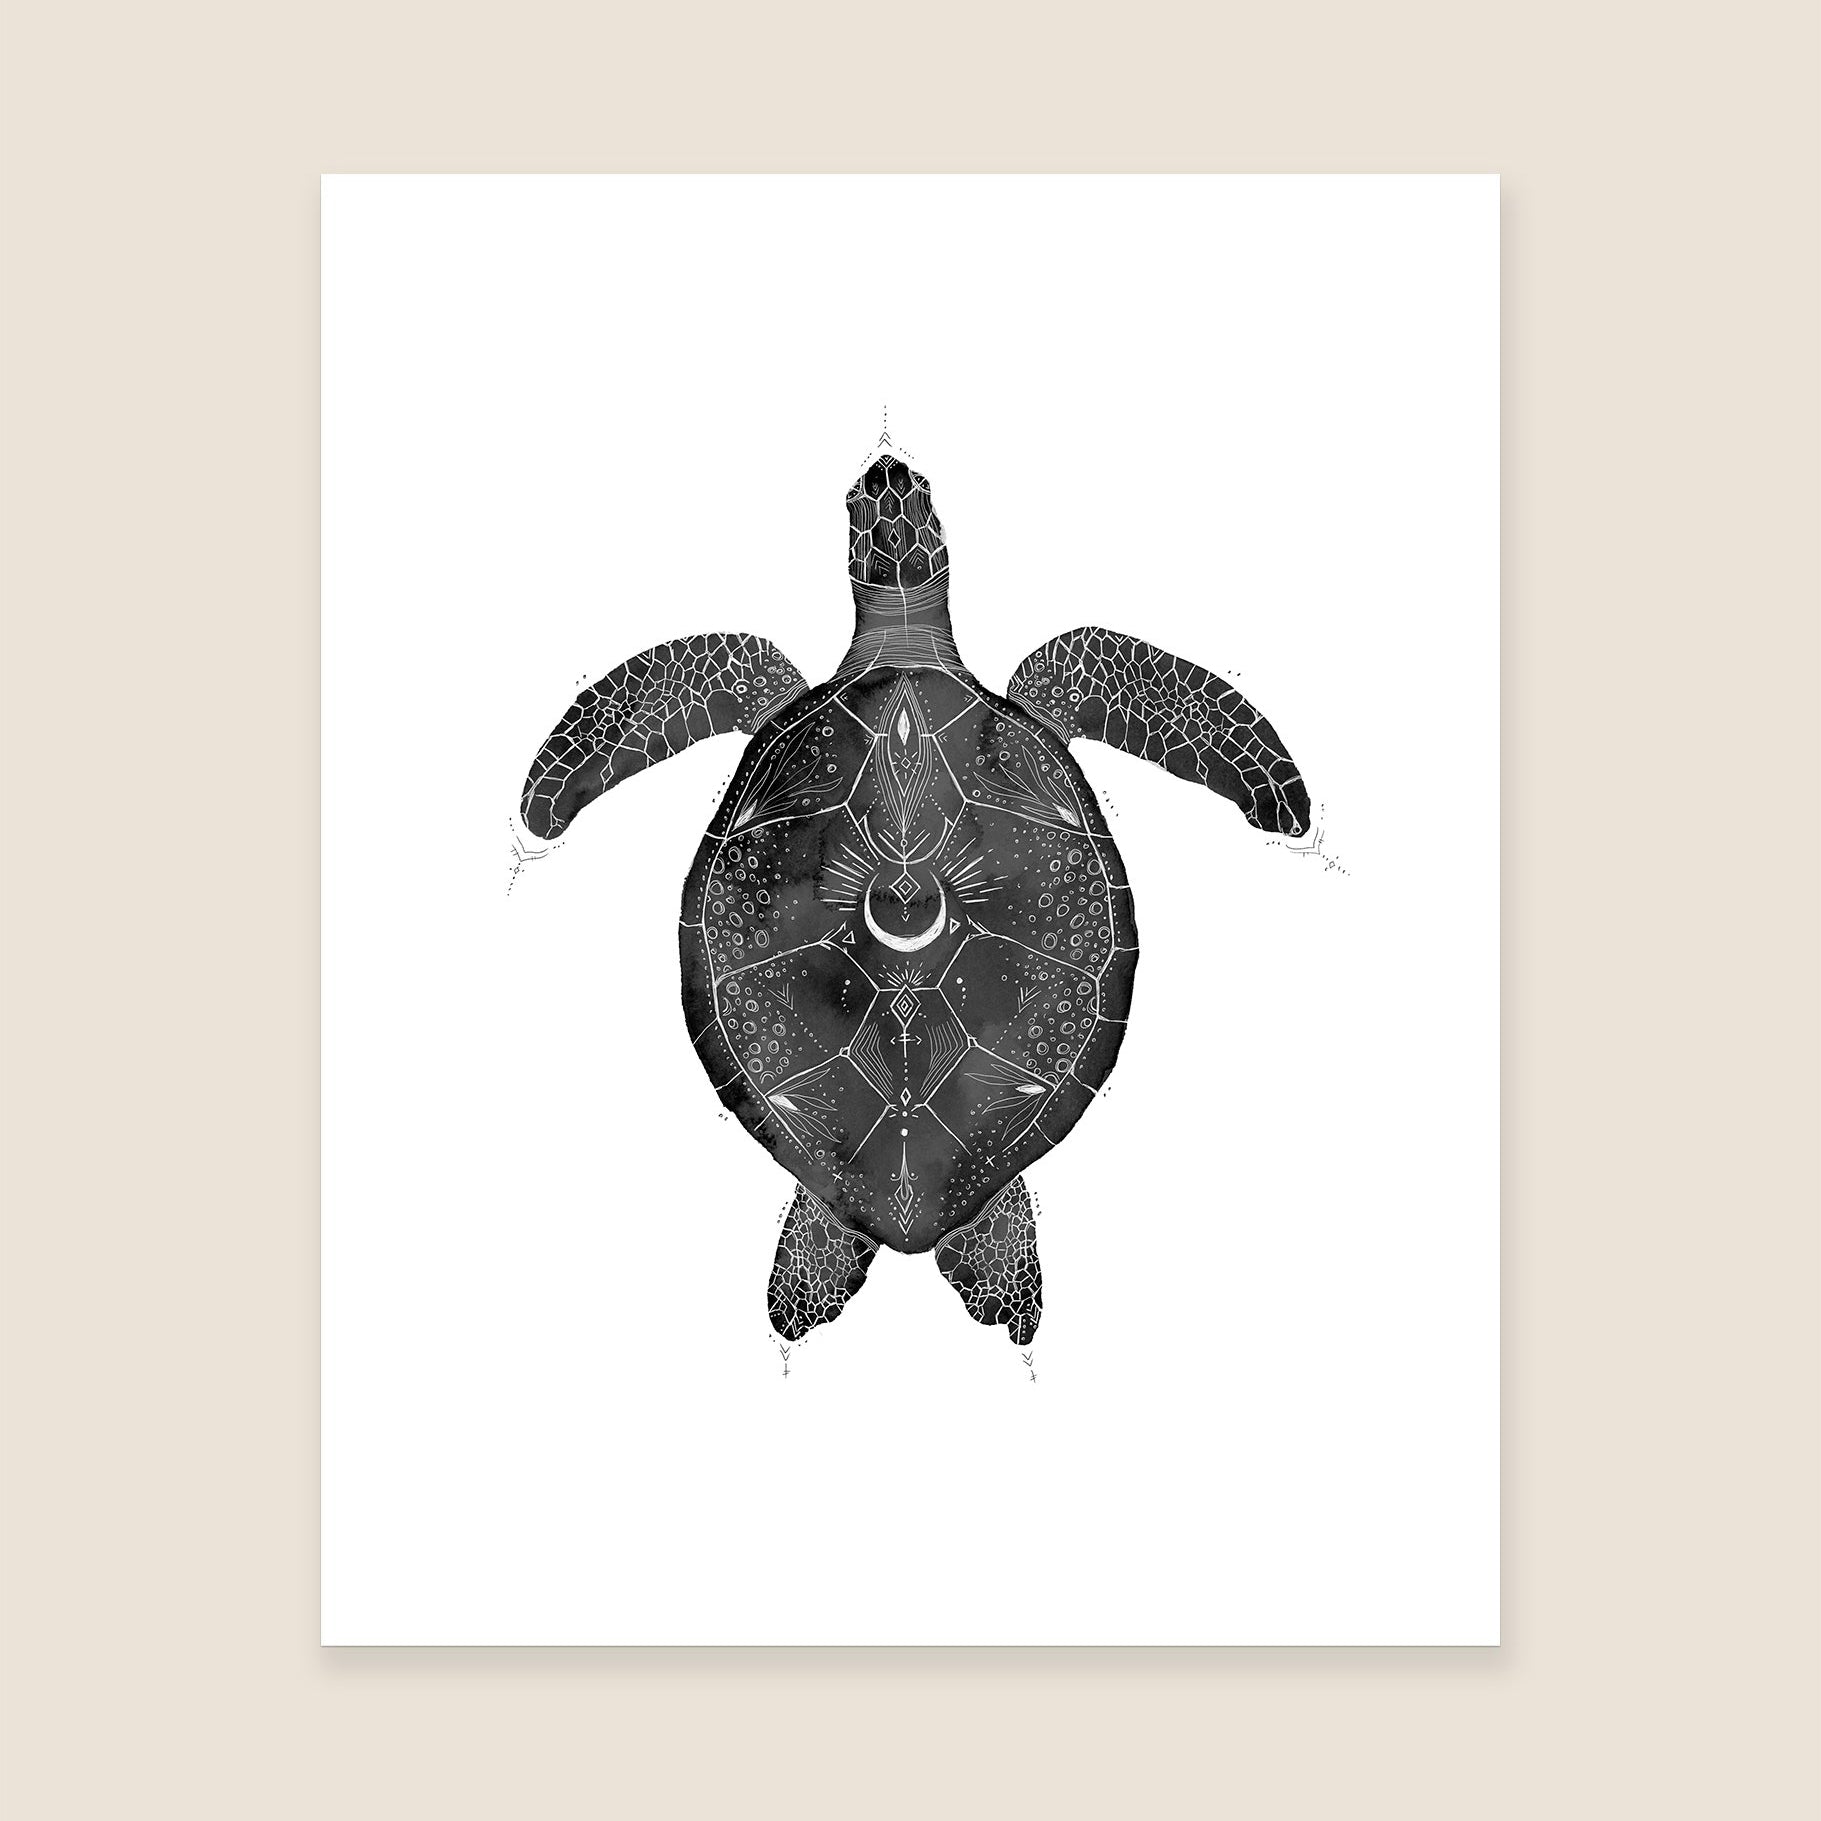 Green Sea Turtle Print